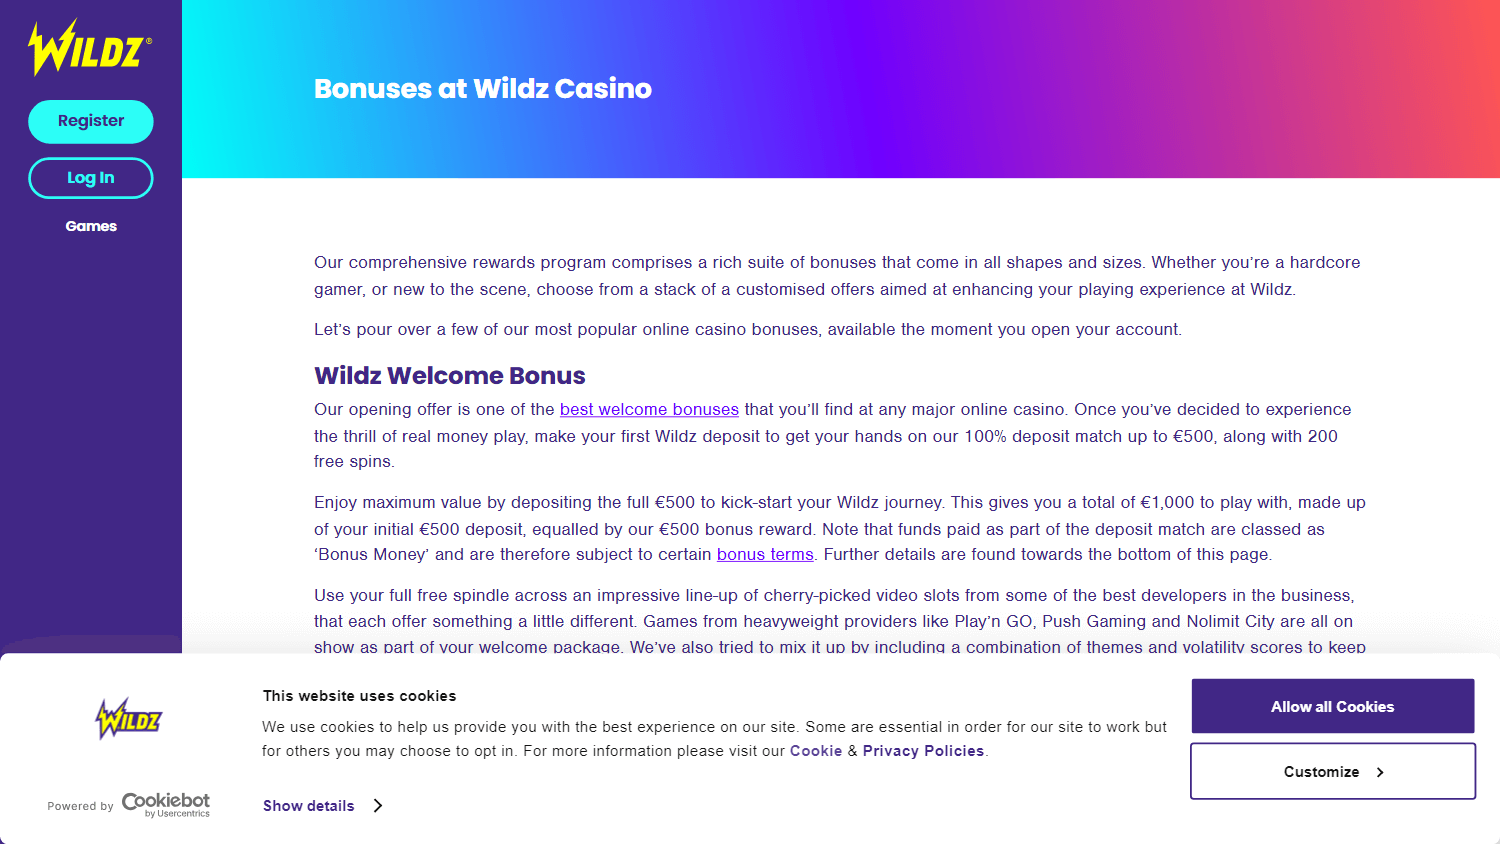 wildz_casino_promotions_desktop